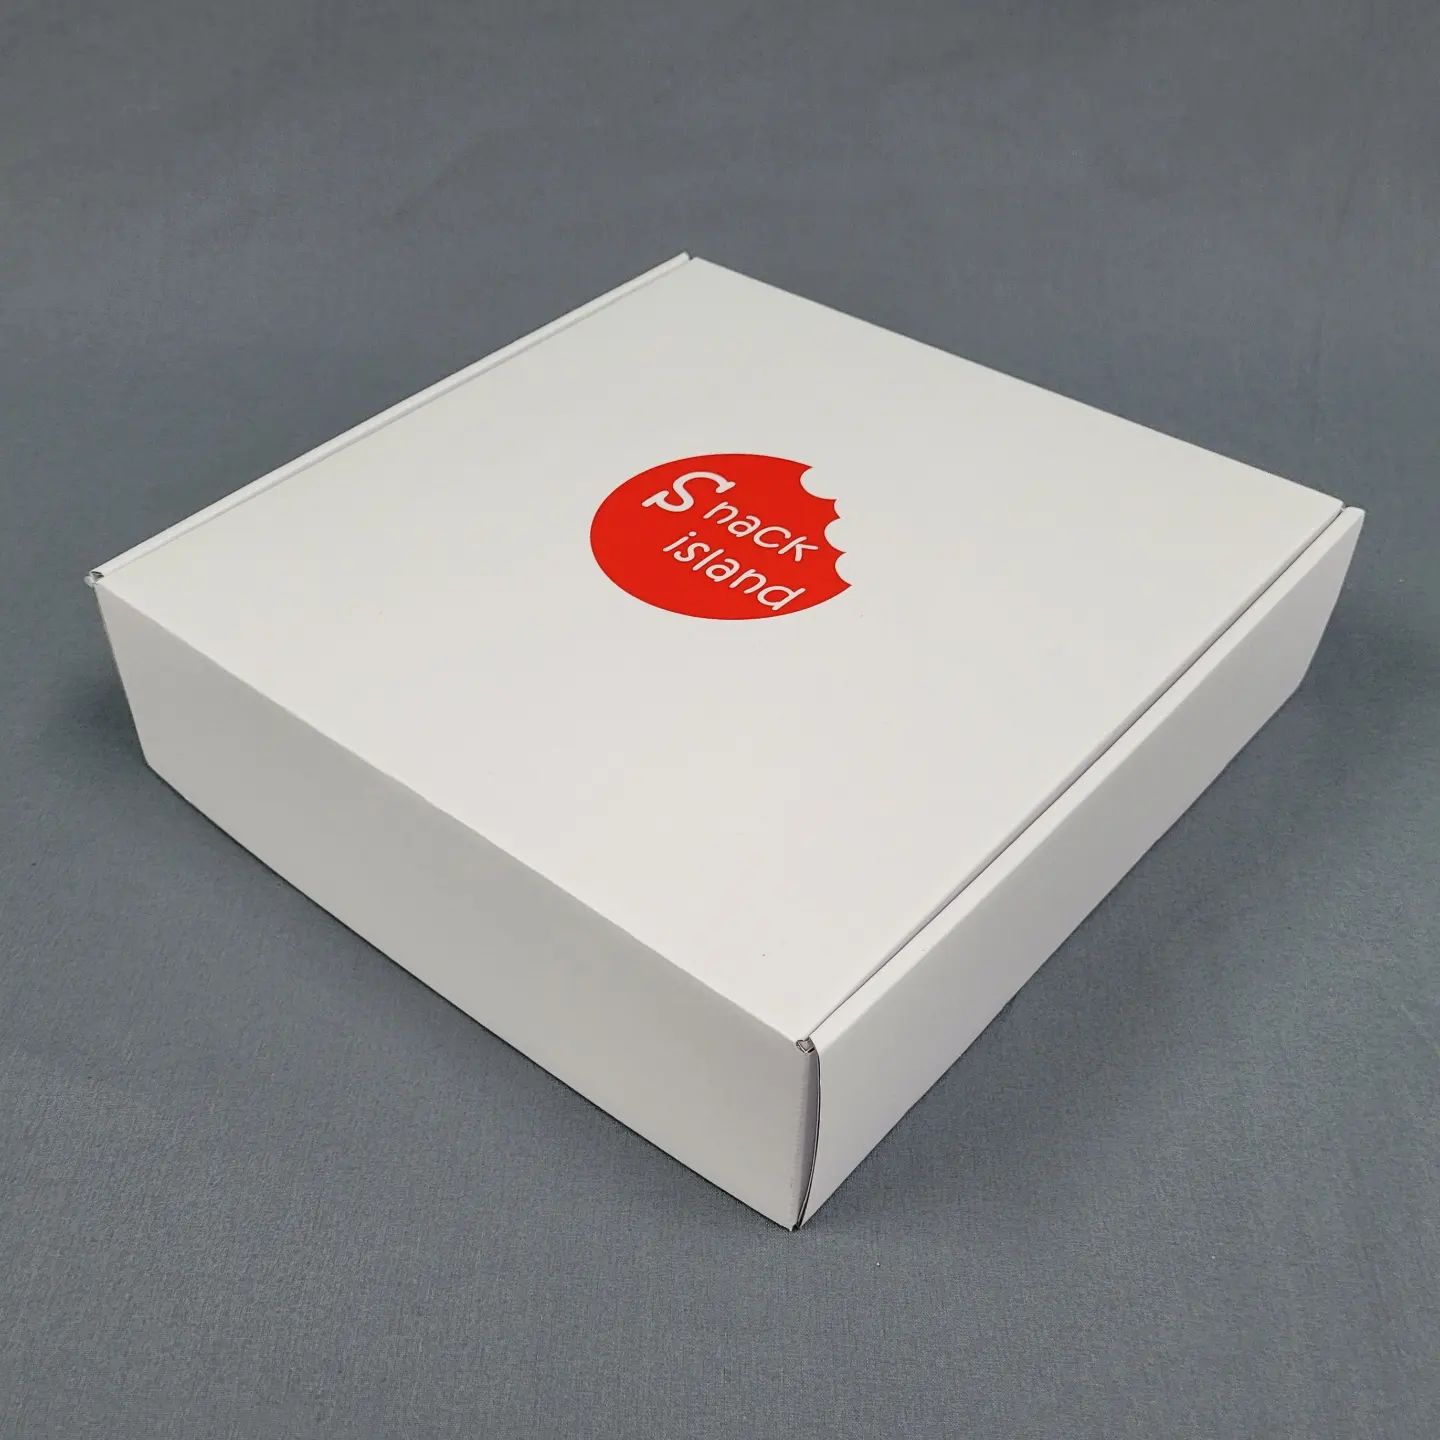 ダンボール箱オーダーメイドの制作事例-白のカラーダンボール